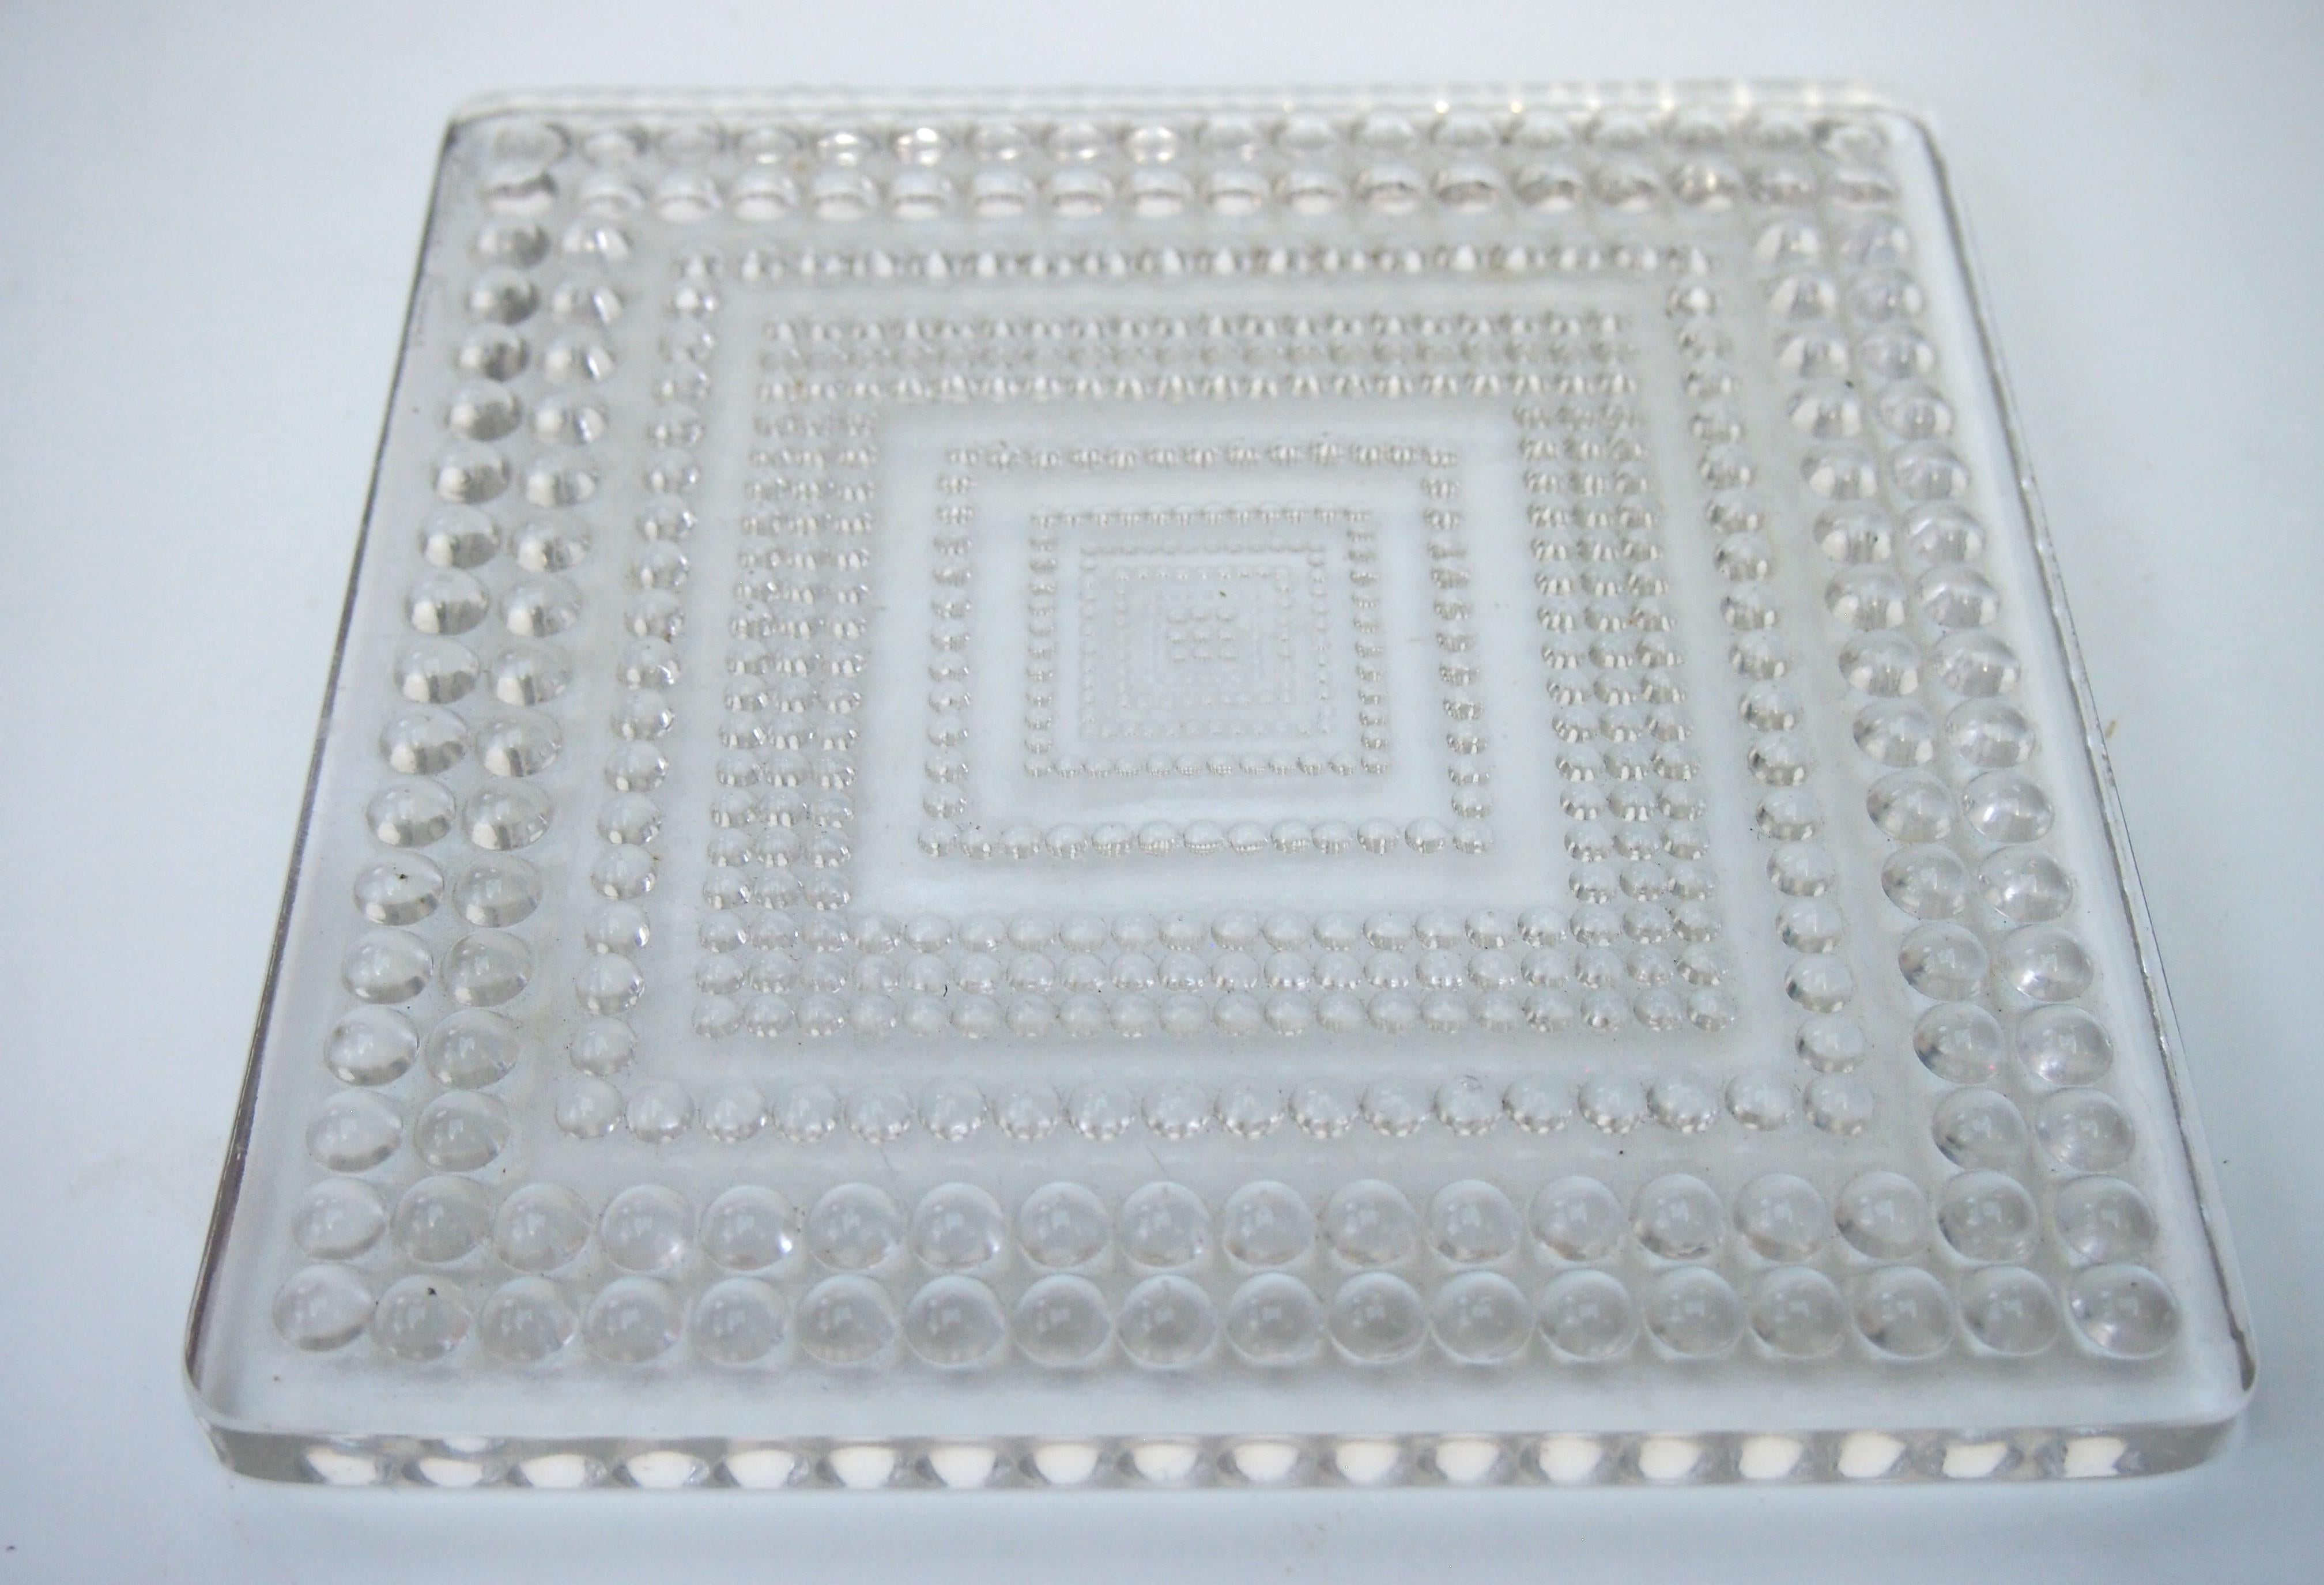 Seltene Rene Lalique Klarglas Quadrat Perles Tischplatte 1934. Neben den üblichen Vasen, Schalen, Tischgeschirr, Auto-Maskottchen usw. fertigte Rene Lalique auch architektonische Installationen an - einige der berühmtesten davon wurden in Church's